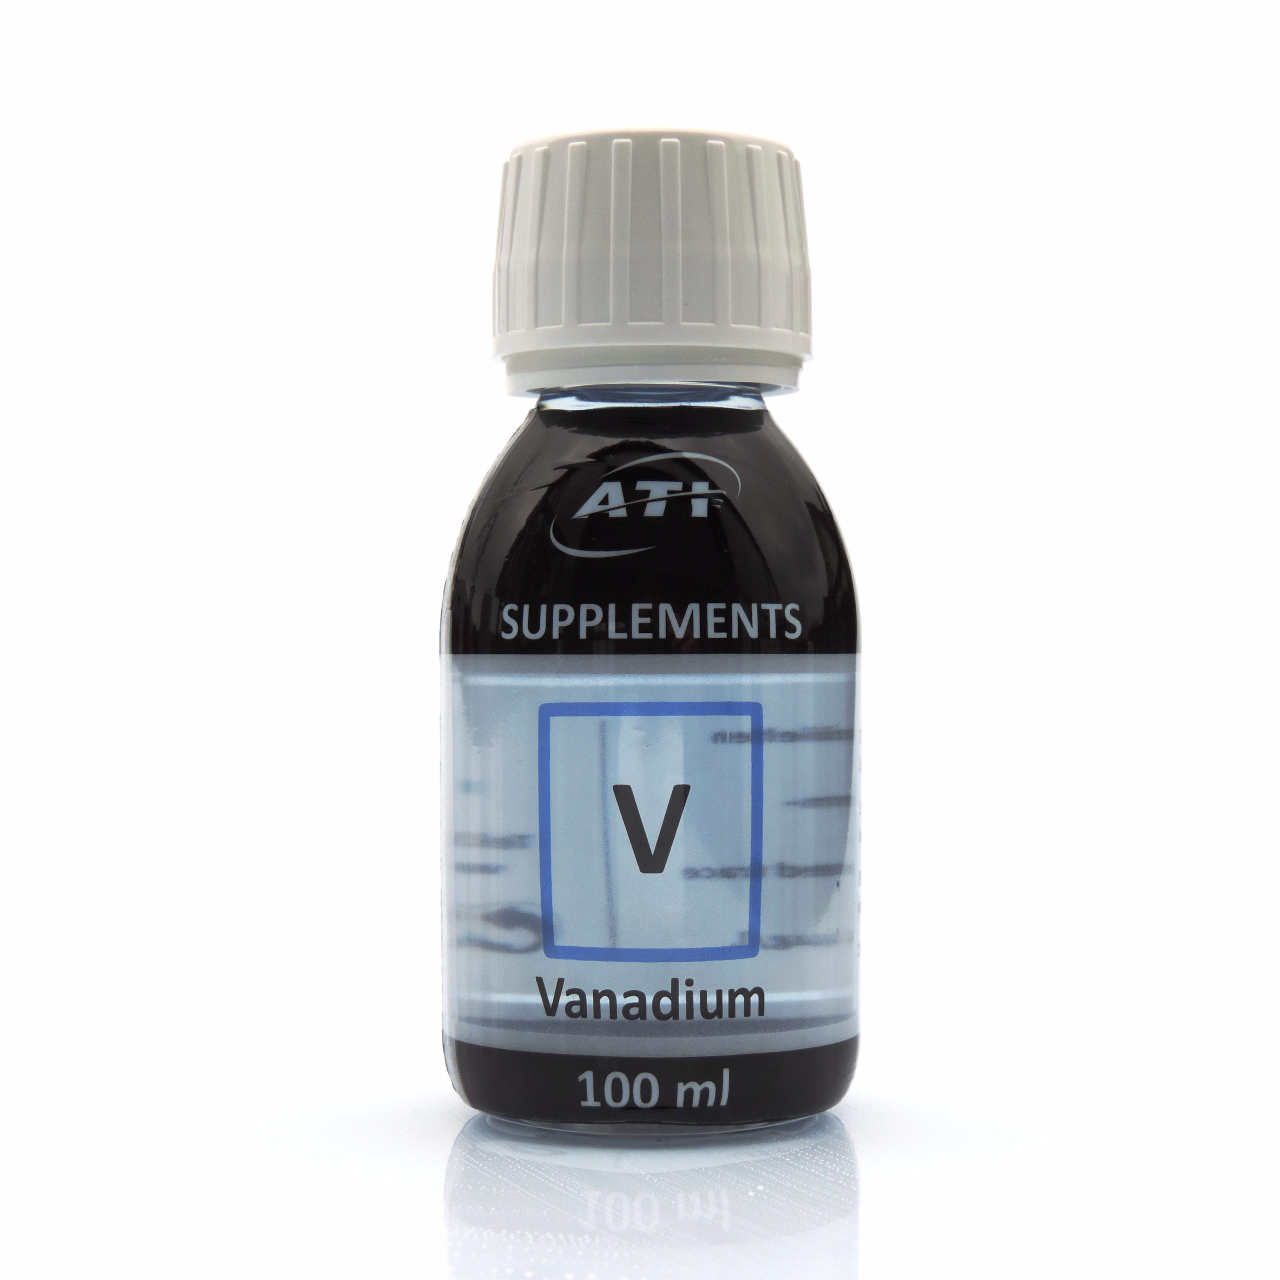 ATI Vanadium 100 ml